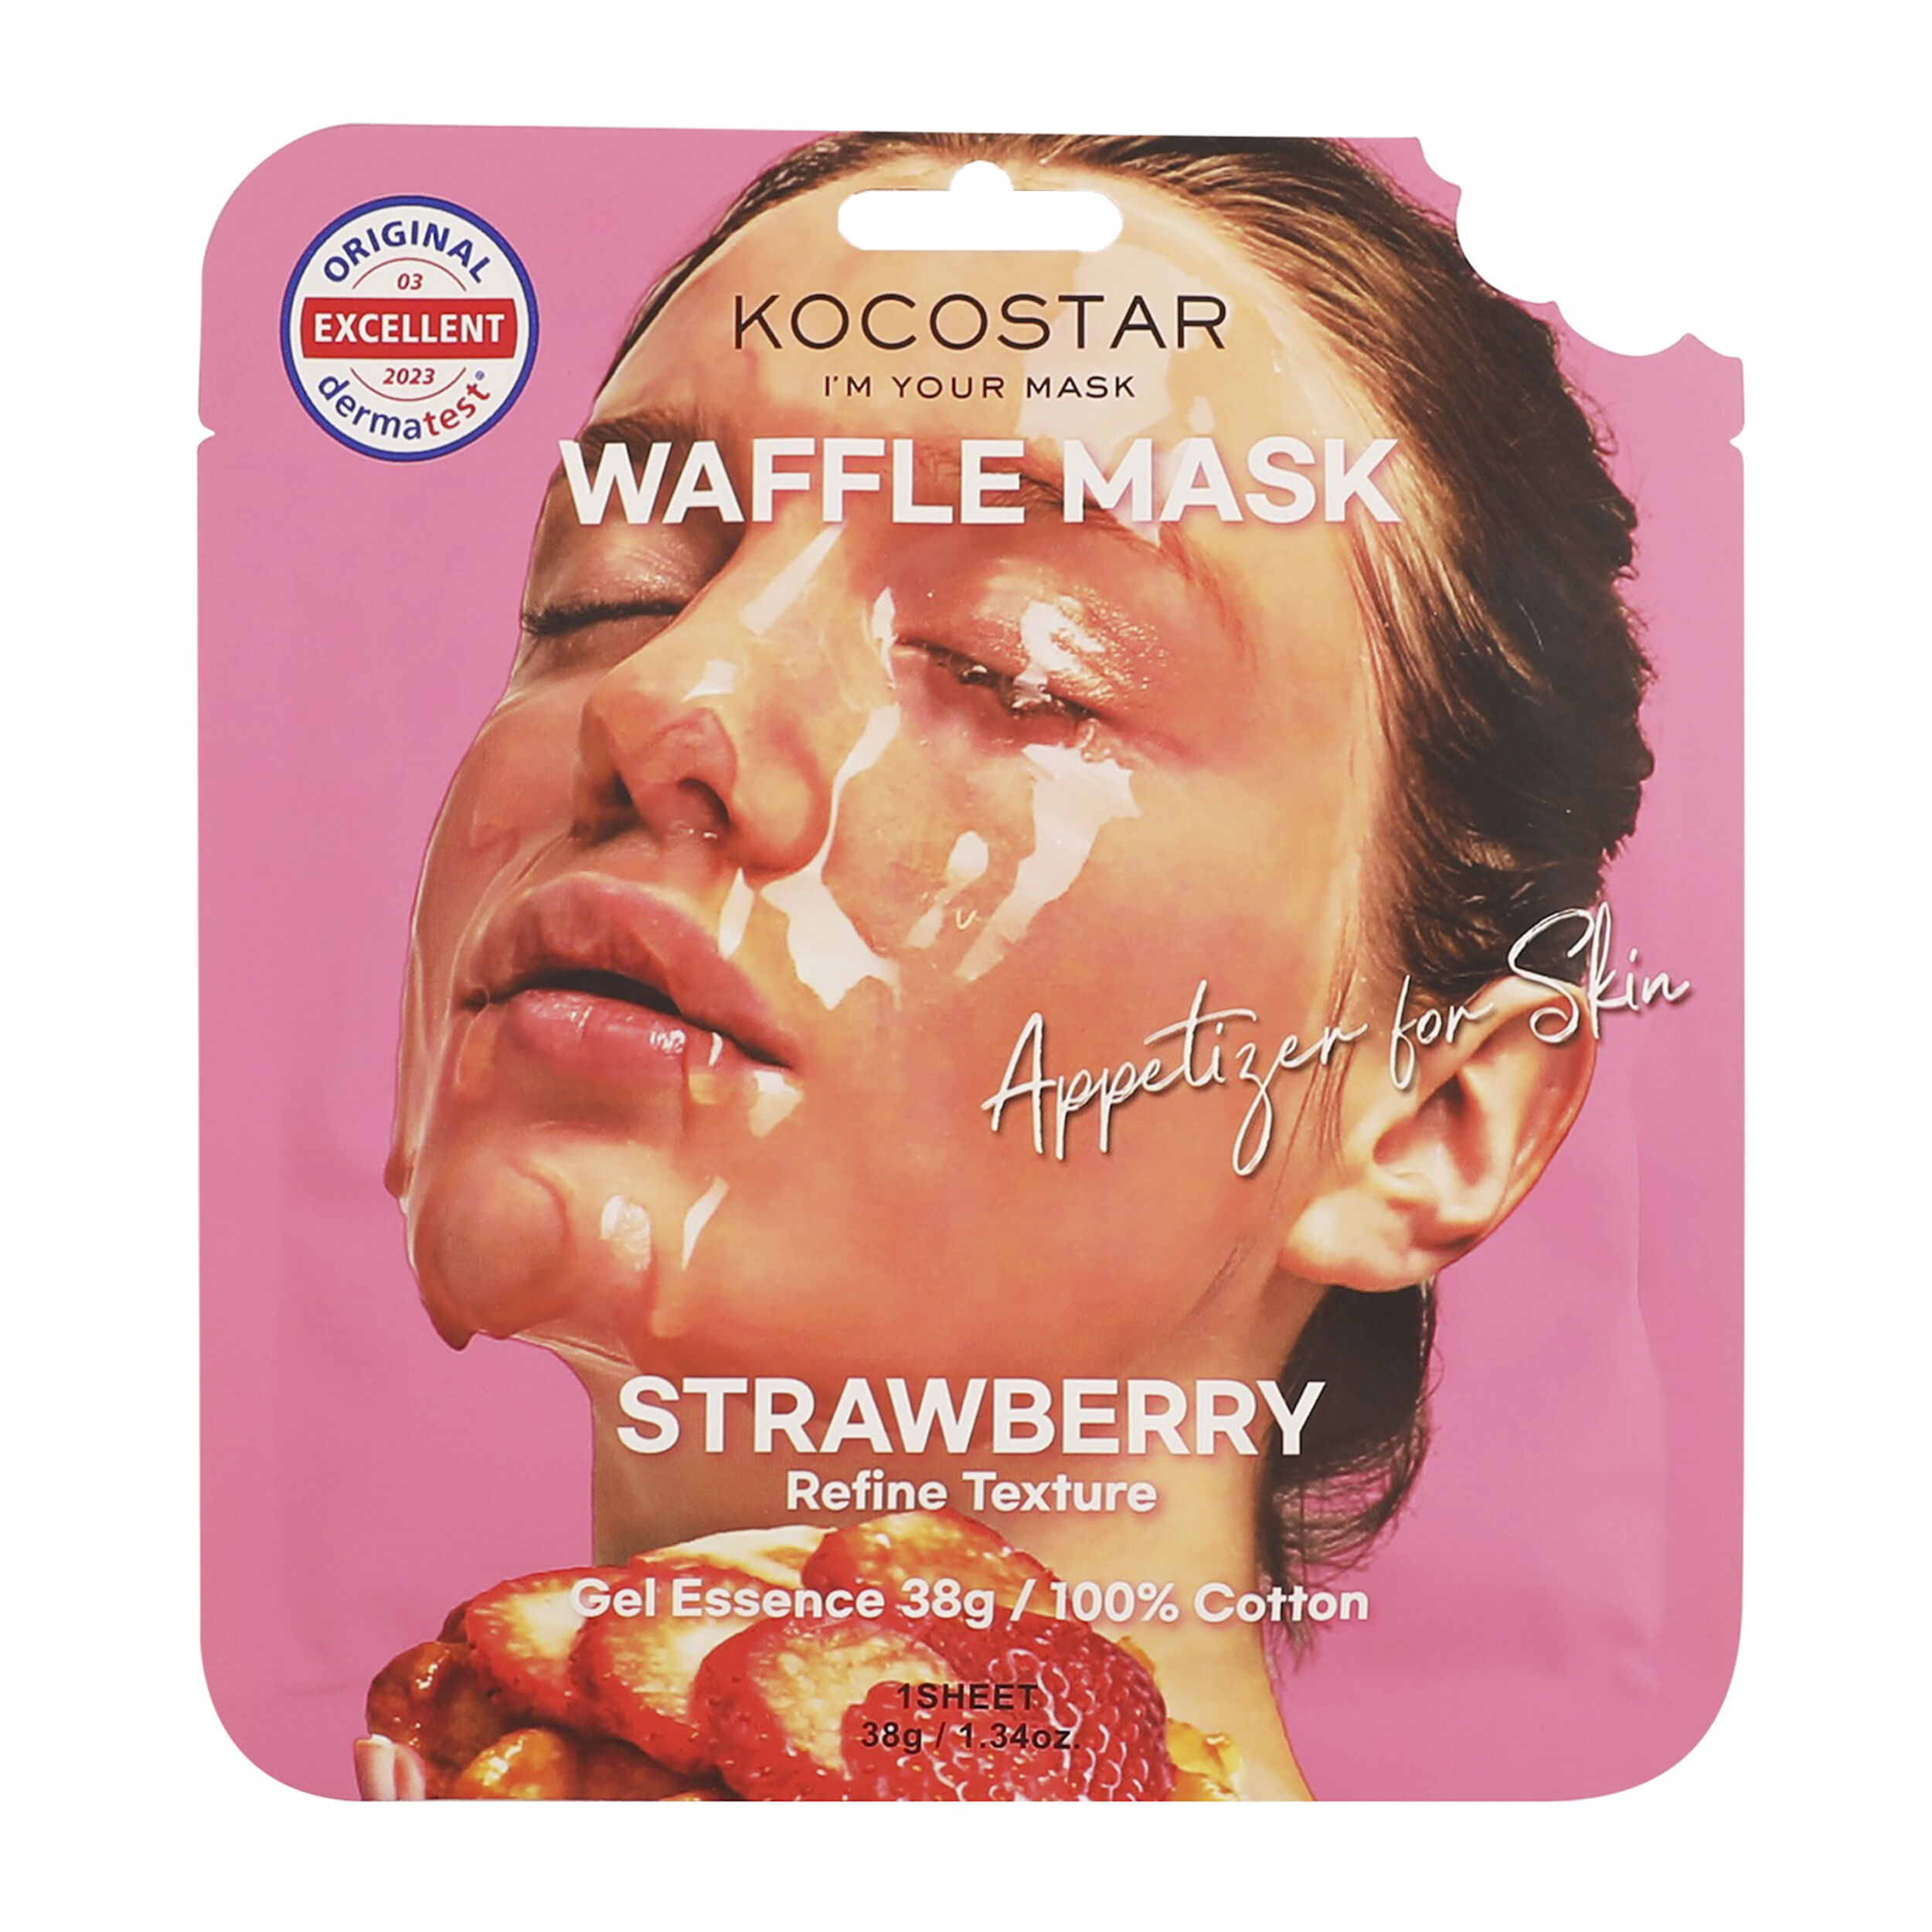 маска для лица kocostar противовоспалительная вафельная маска для лица черничное наслаждение waffle mask blueberry Маска для лица клубника Kocostar Waffle Mask, 38 гр